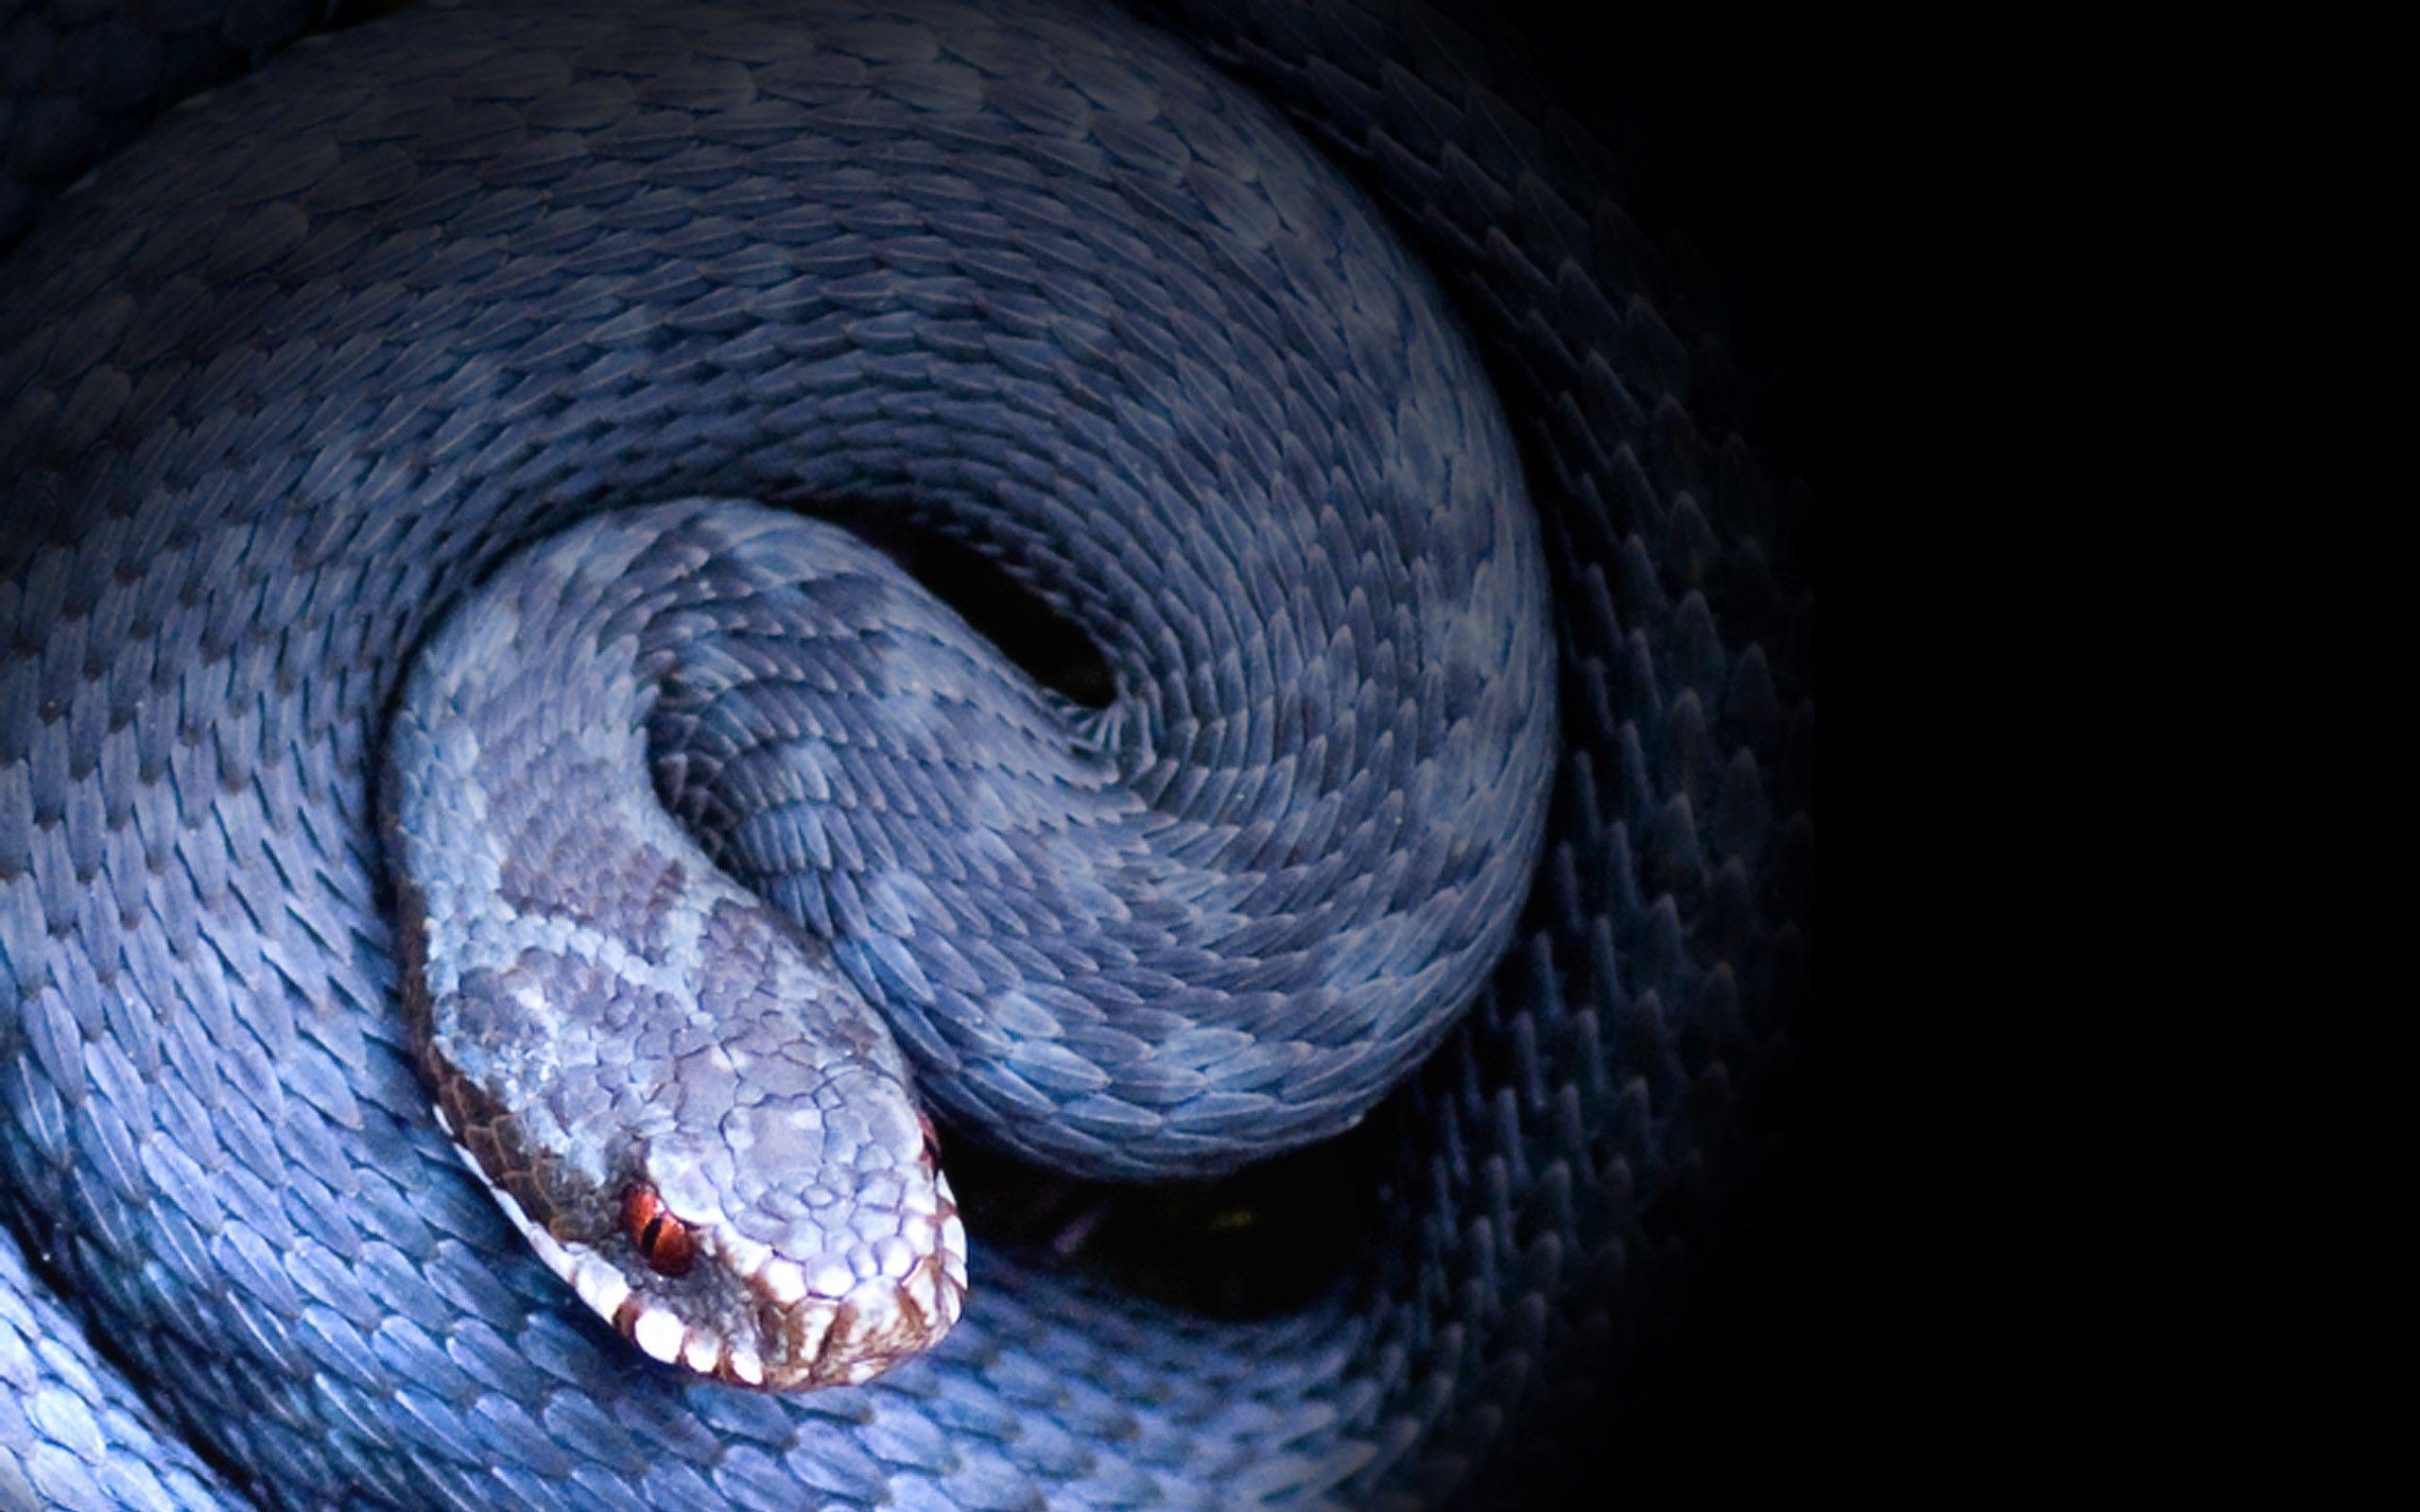 Beautiful Snake Wallpaper HD Image